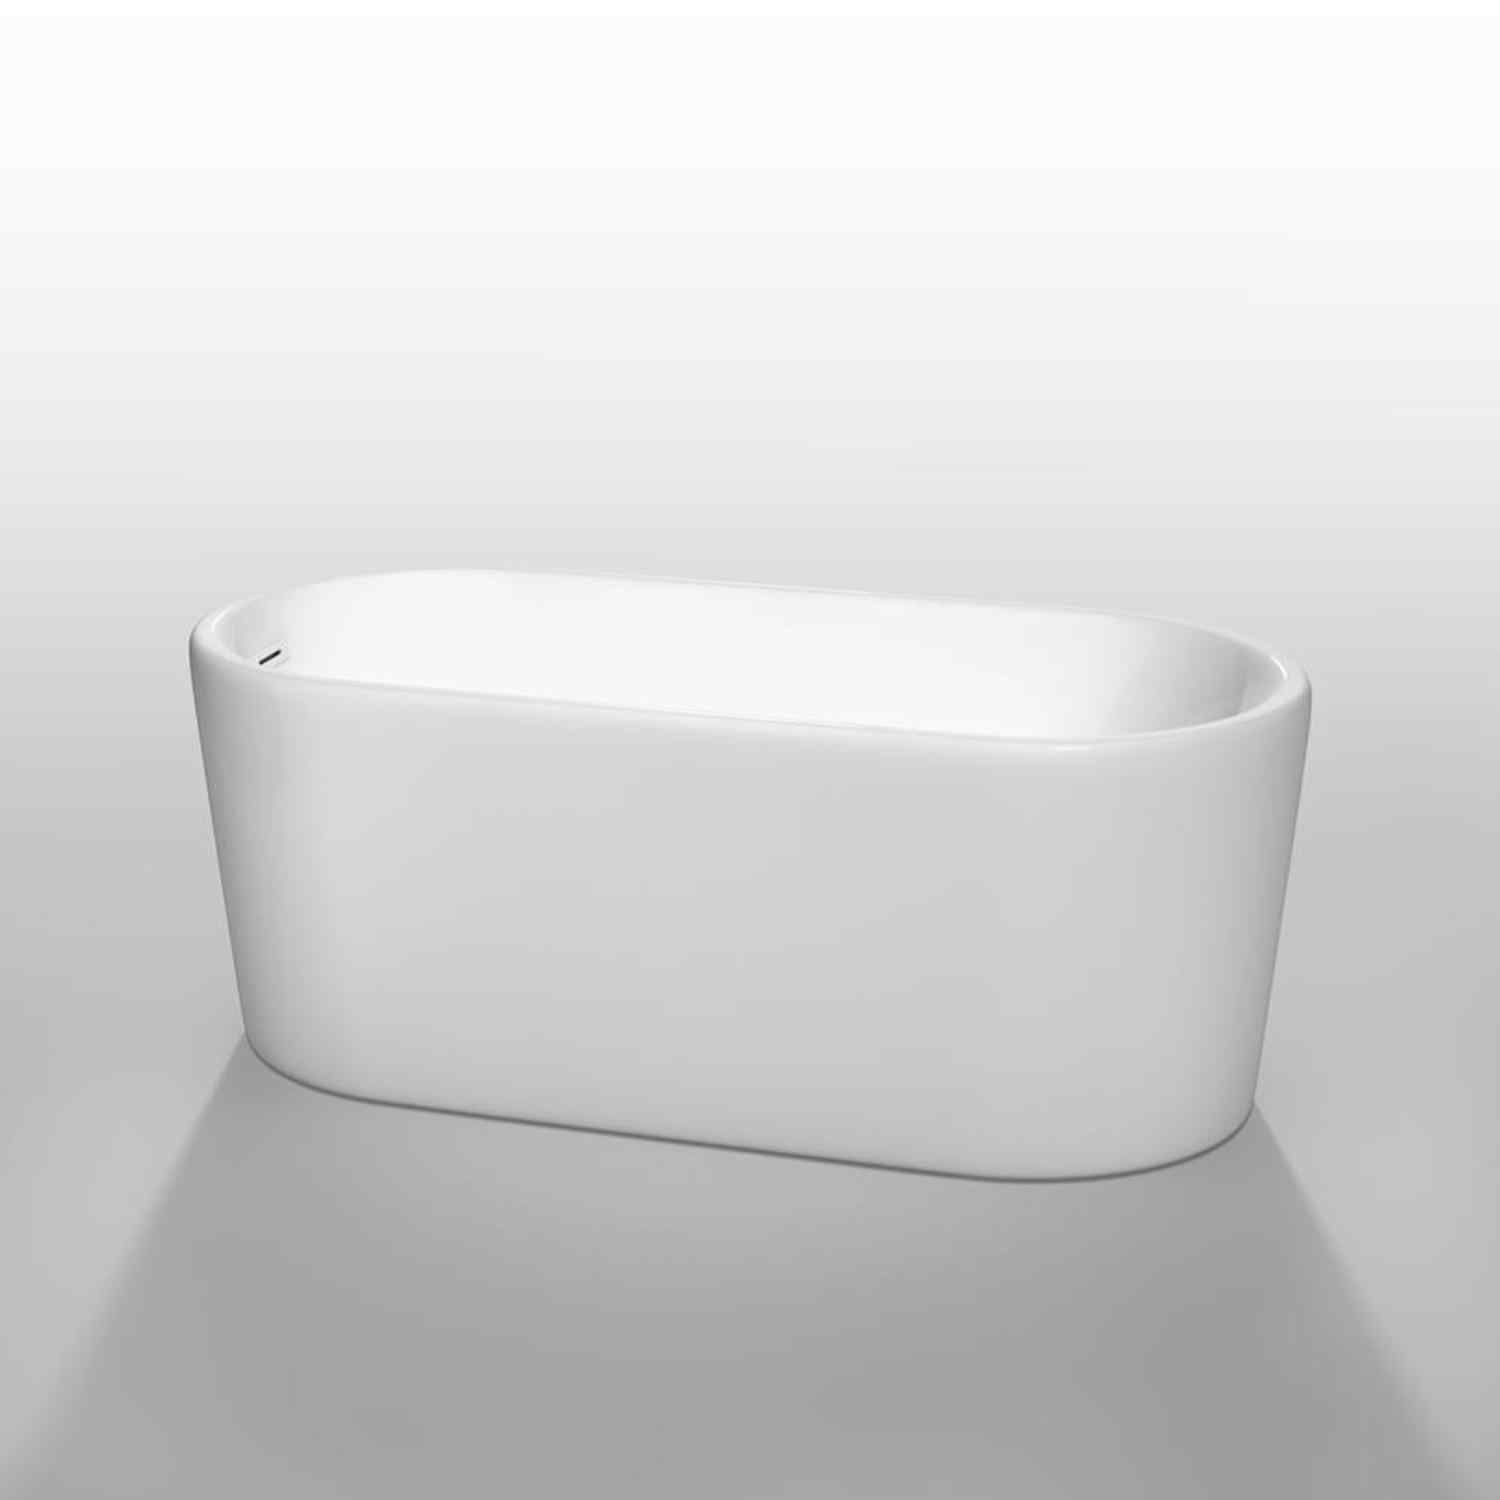 Wyndham collection Ursula 59 Inch Freestanding Bathtub in White image